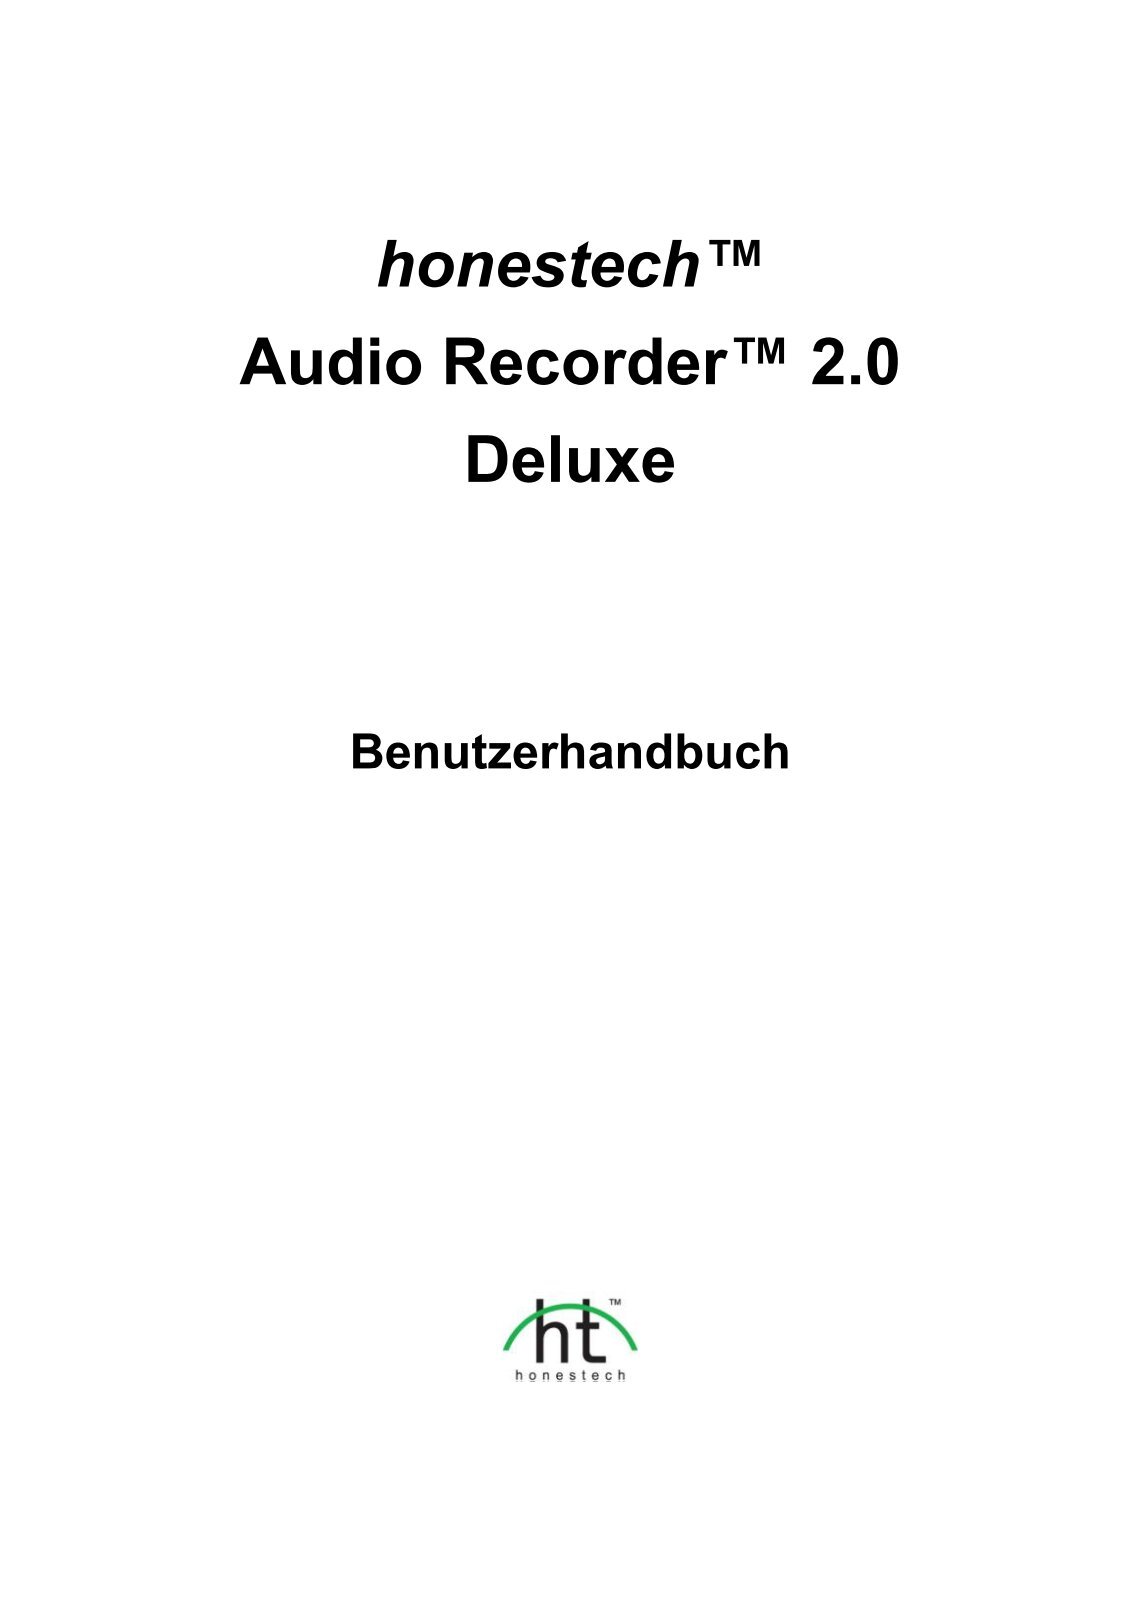 honestech audio recorder 2.0 deluxe download deutsch